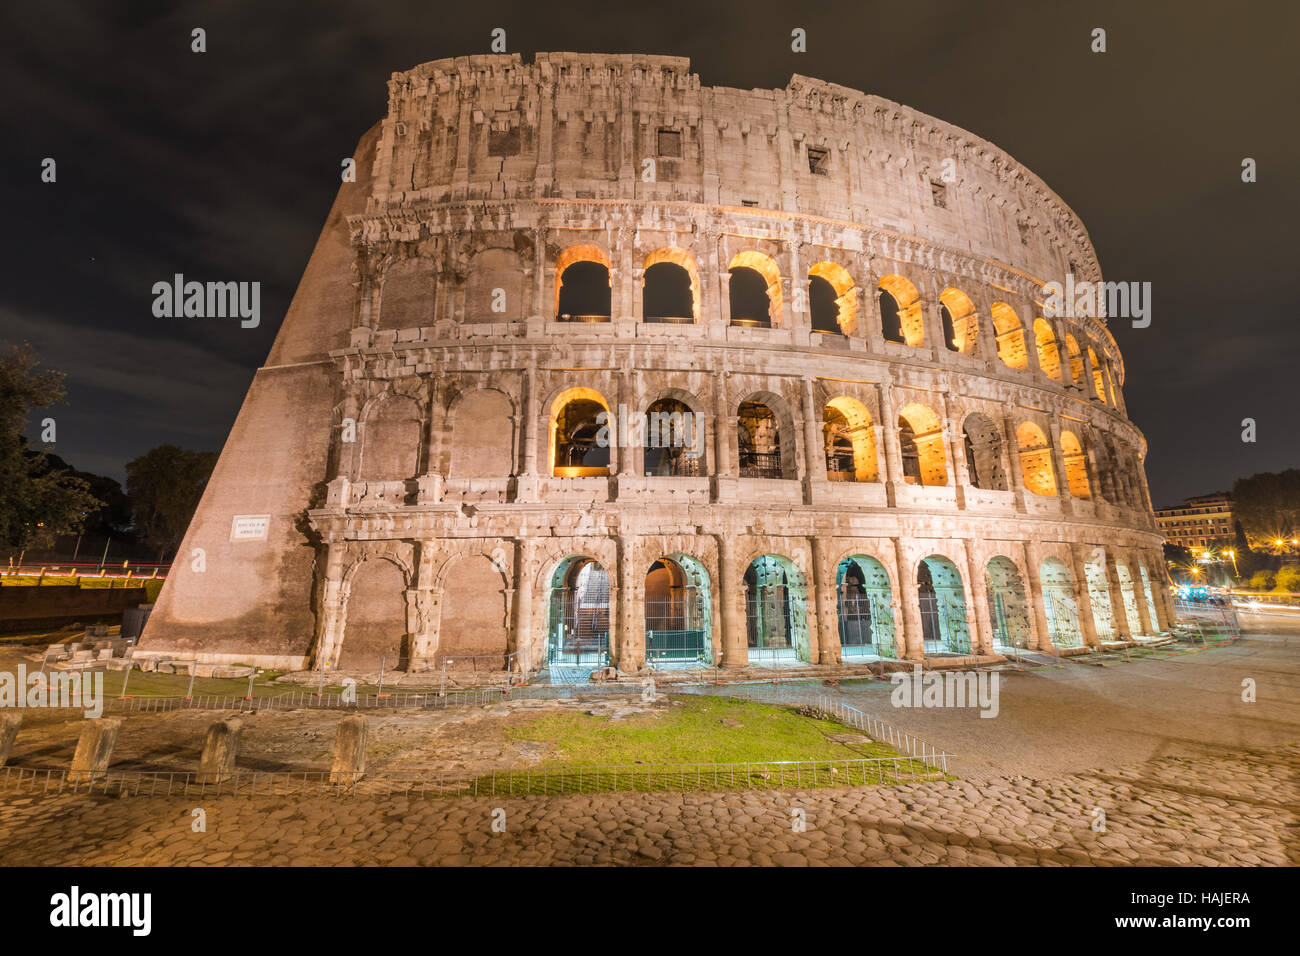 Roma, Italia - La zona archeologica nel centro storico Foto Stock